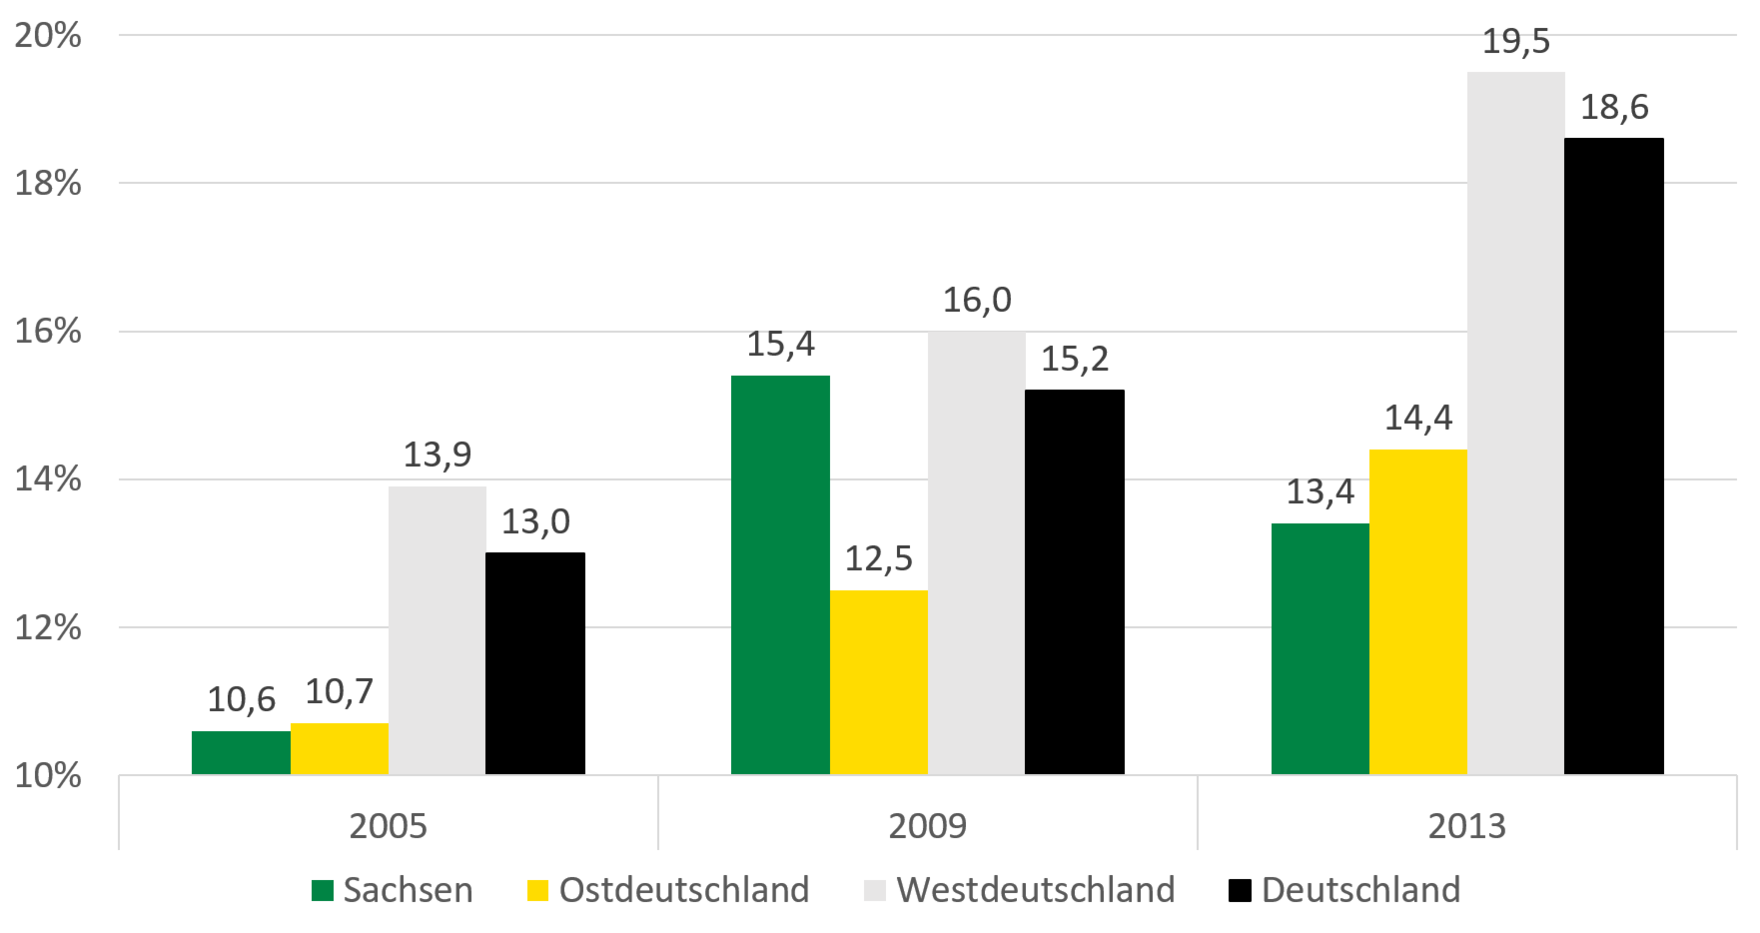 In Ost- und Westdeutschland ist die Armutsgefährdungsquote von Menschen mit Schwerbehinderungen von 2005 bis 2013 kontinuierlich gestiegen. 2009 stieg die Quote in Sachsen stark an um dann wieder leicht zu fallen. Im Jahr 2013 lag die Quote in Westdeutschland bei 19,5 Prozent und damit deutlich höher als in Sachsen (13,4 Prozent).